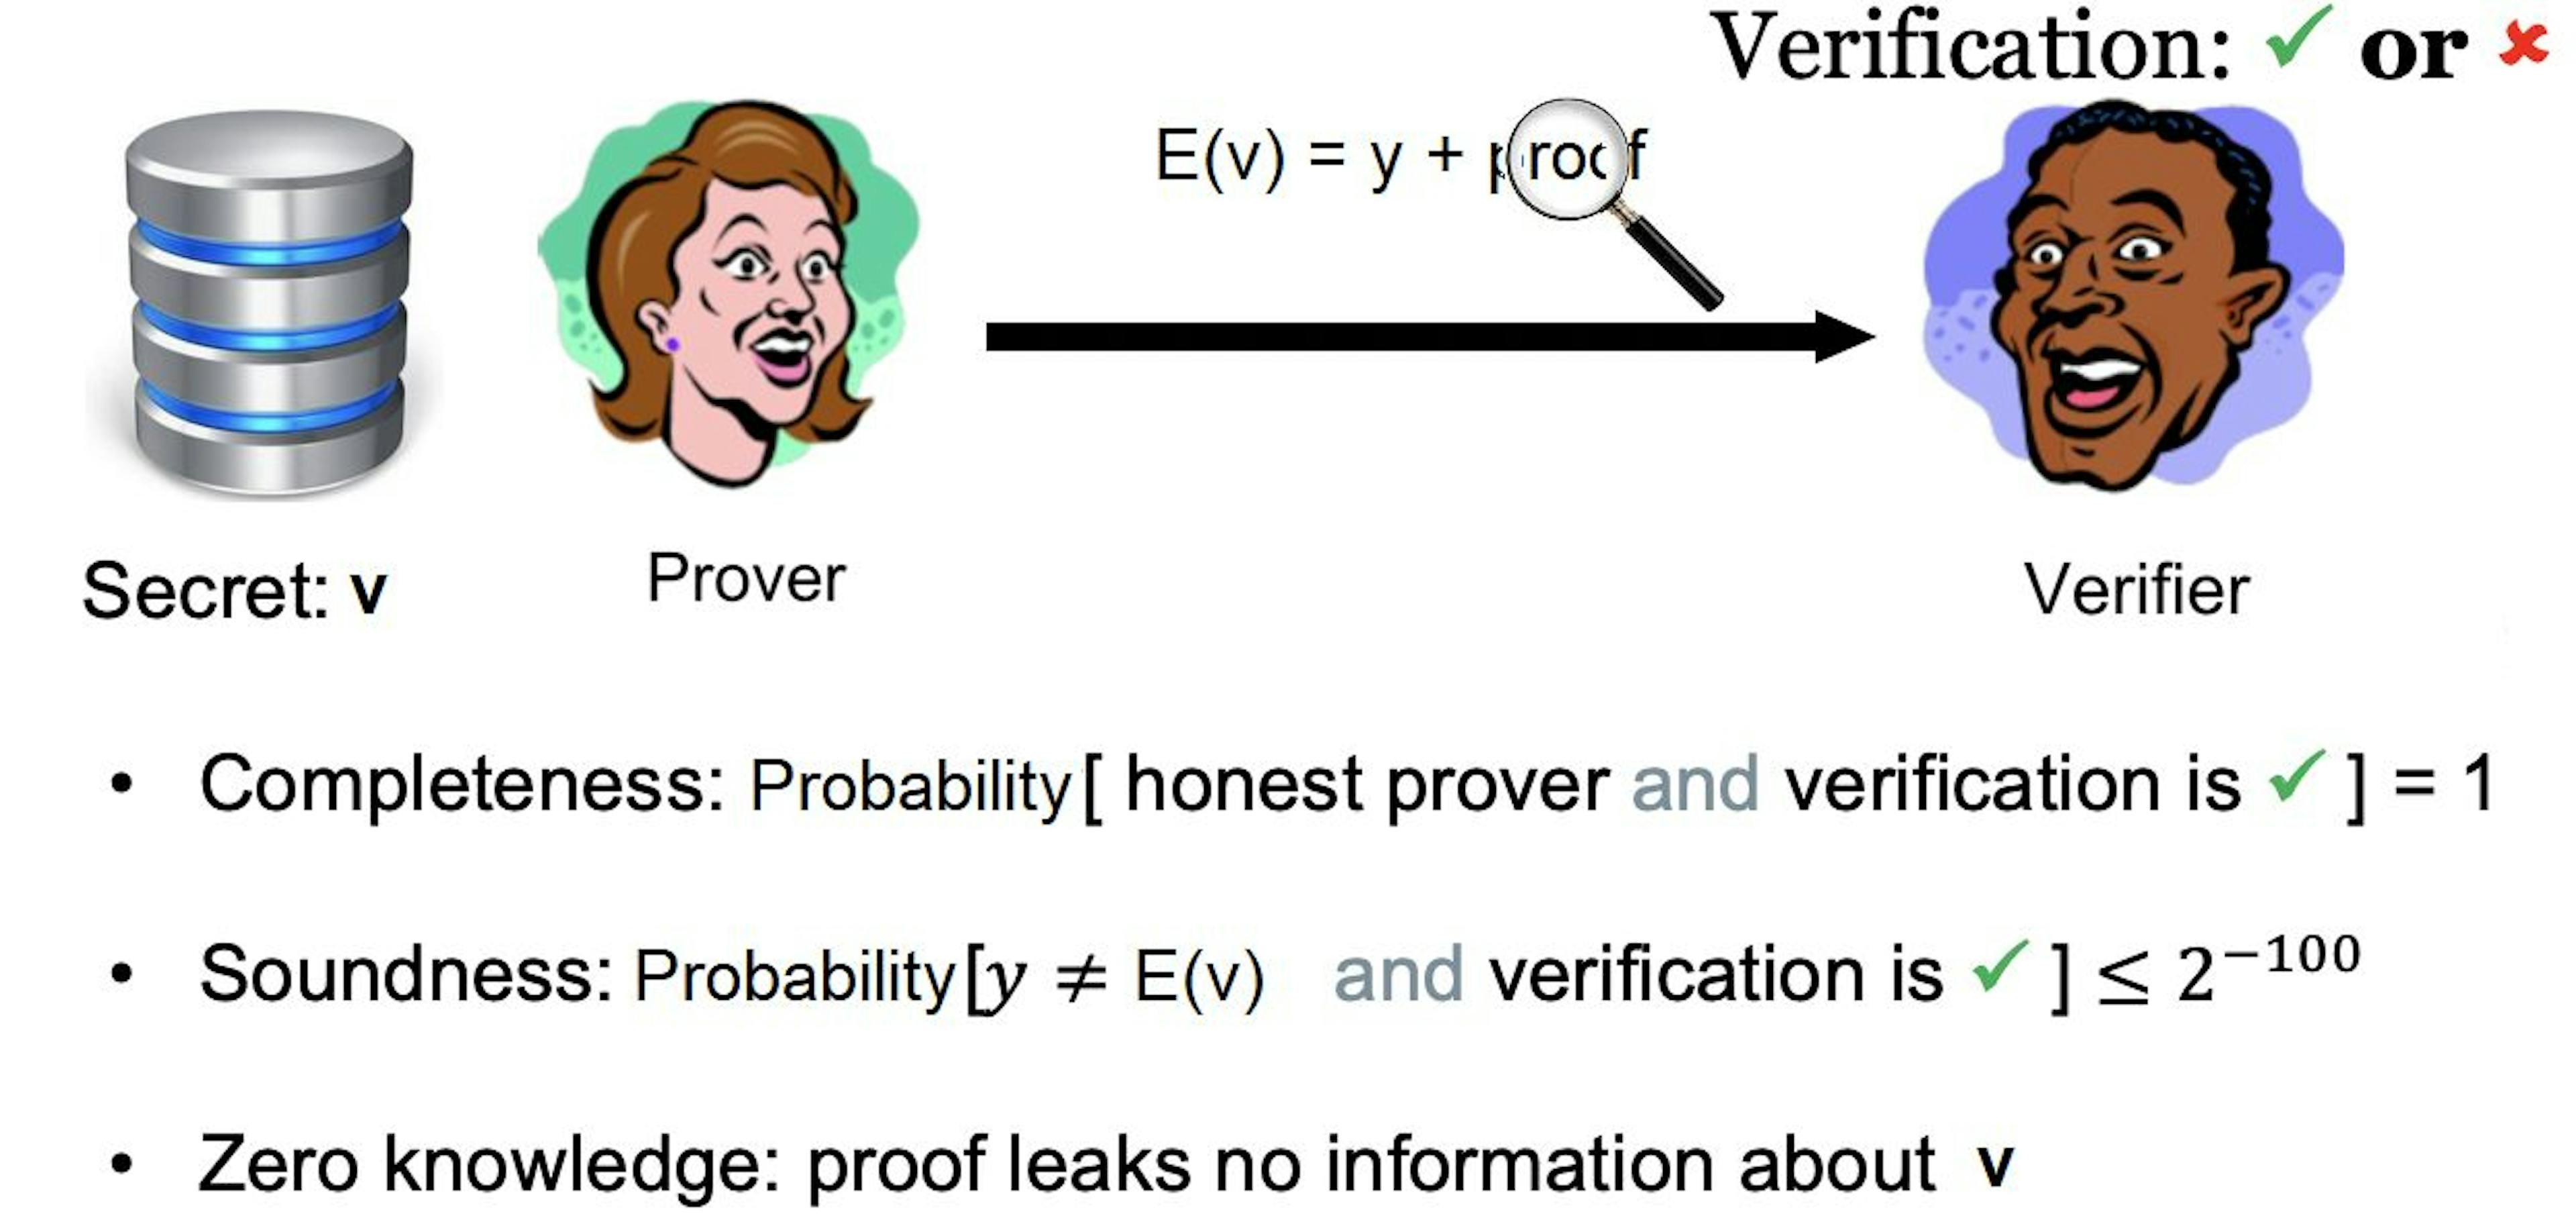 zero-knowledge proofs